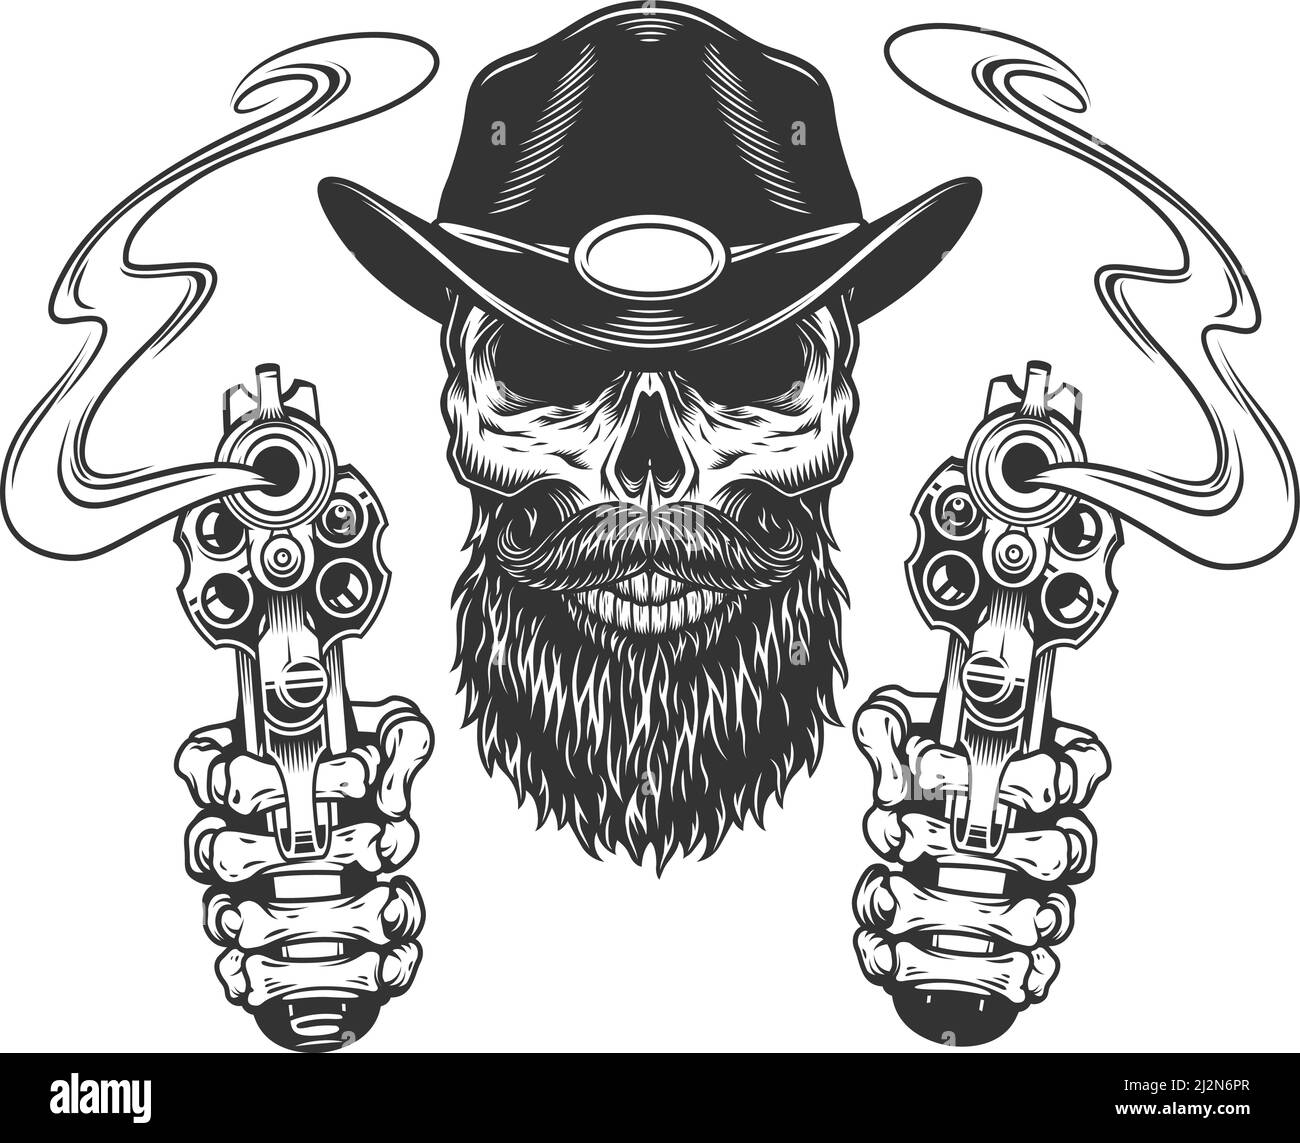 Crâne de shérif vintage barbu et moustaché avec mains de squelette illustration vectorielle isolée par pistolets Illustration de Vecteur